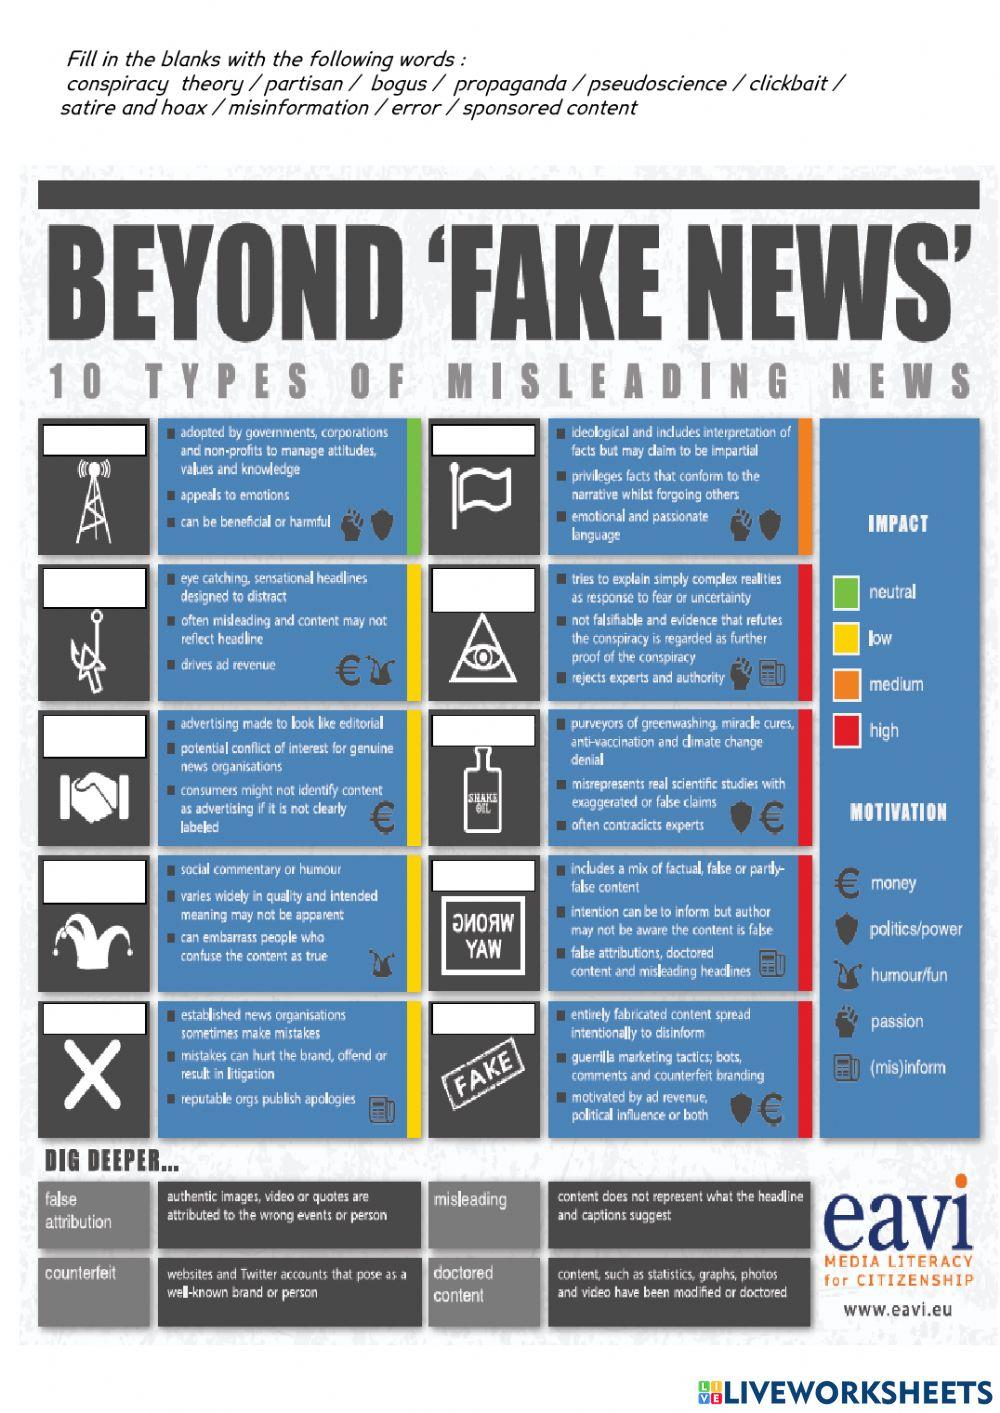 Beyond fake news